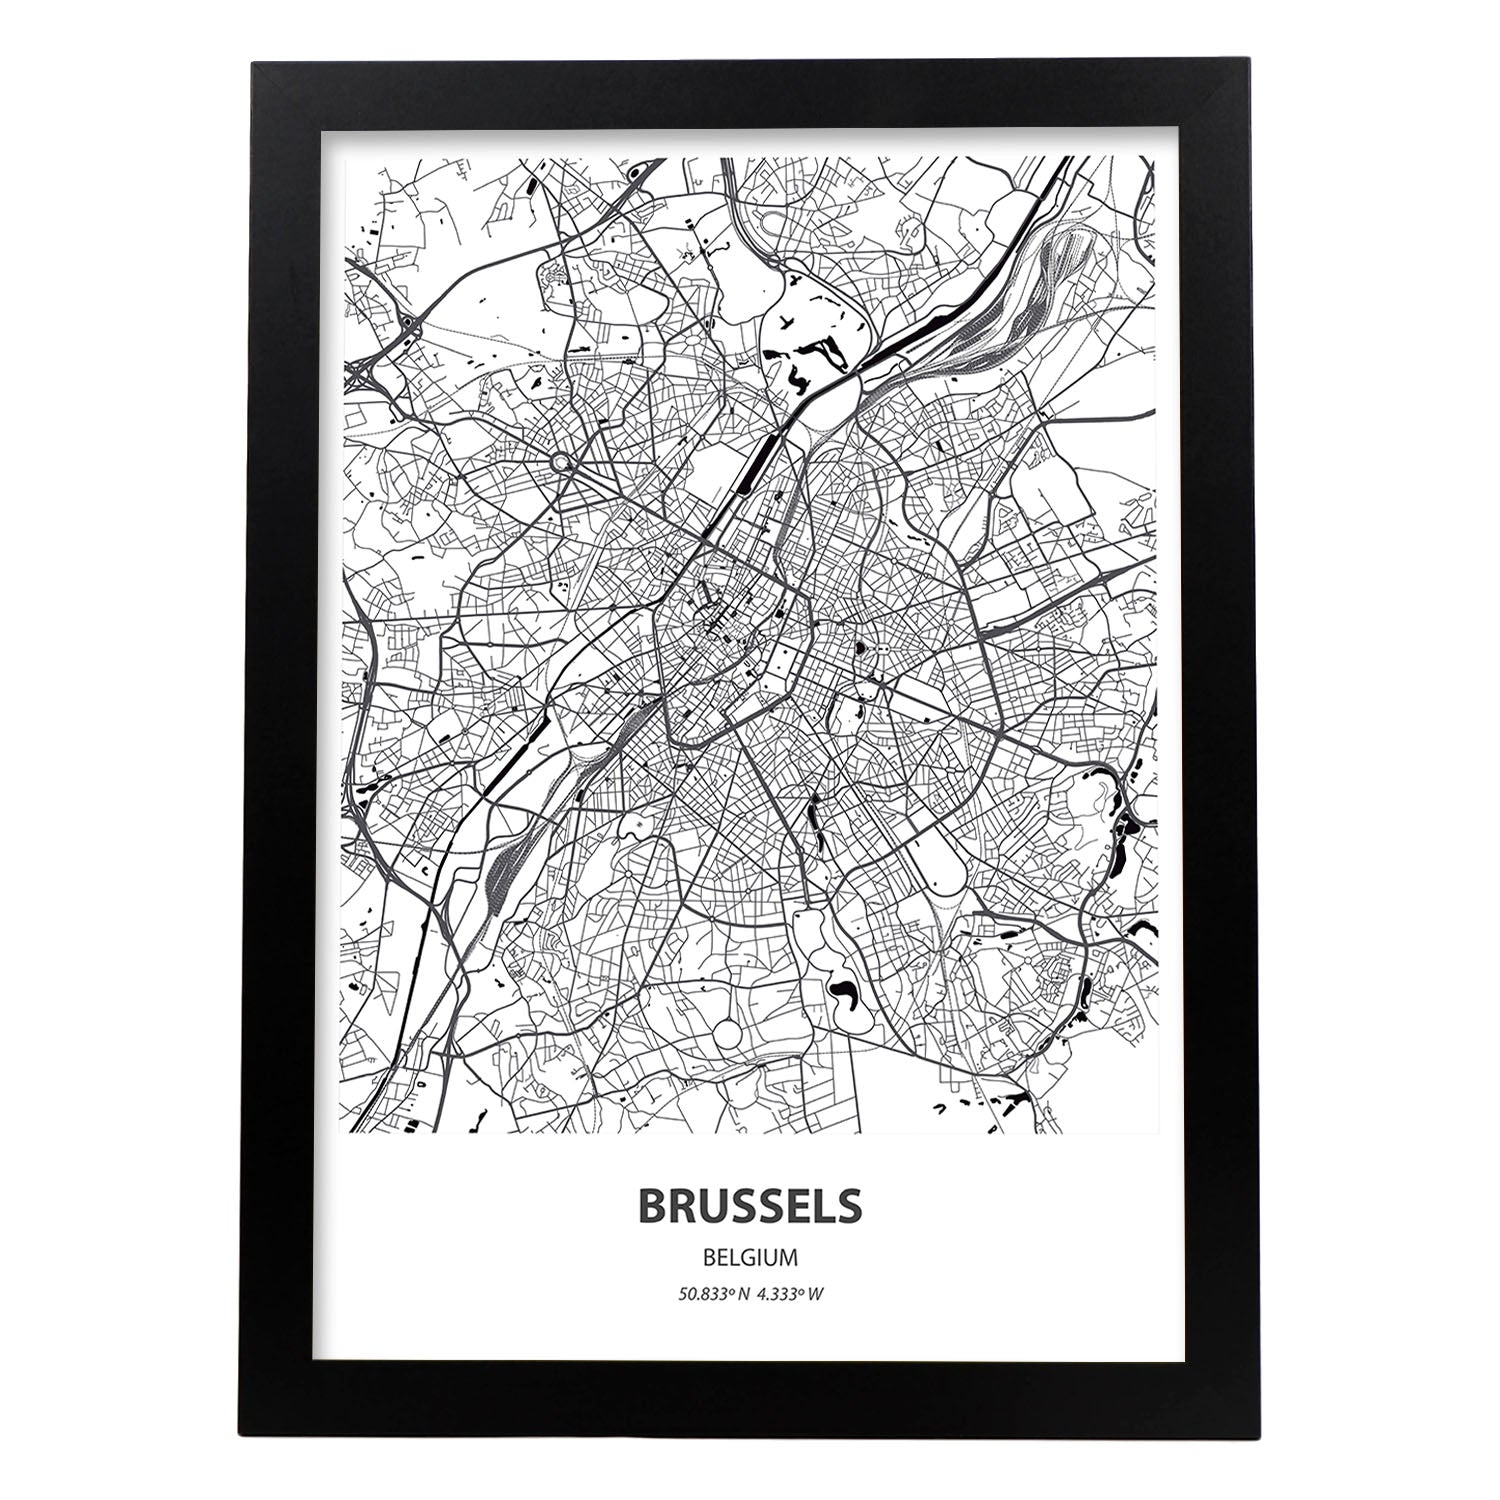 Poster con mapa de Brussels - Belgica. Láminas de ciudades de Holanda y Bélgica con mares y ríos en color negro.-Artwork-Nacnic-A3-Marco Negro-Nacnic Estudio SL